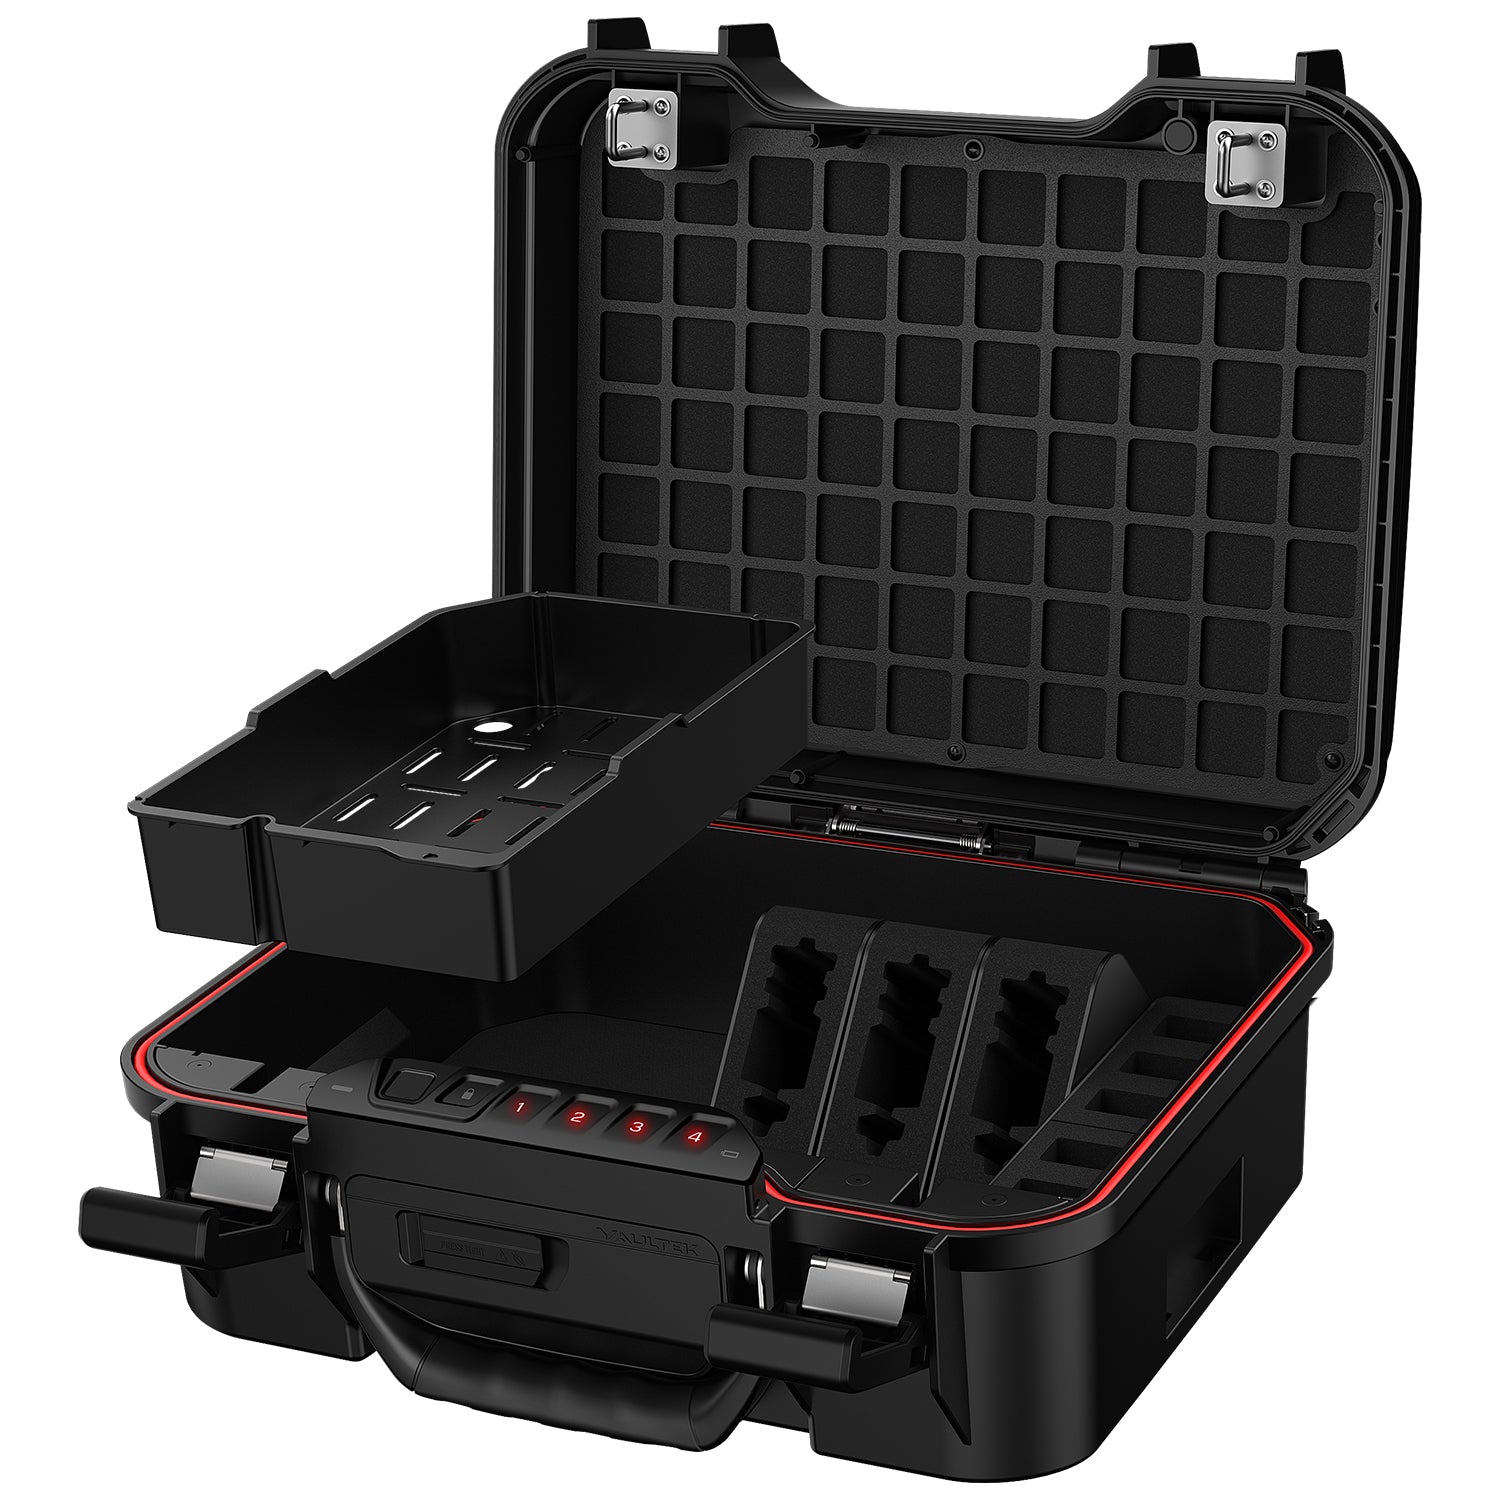 Vaultek Lifepod XT3i High Capacity Weather Resistant Firearm Case Tactical Model Black